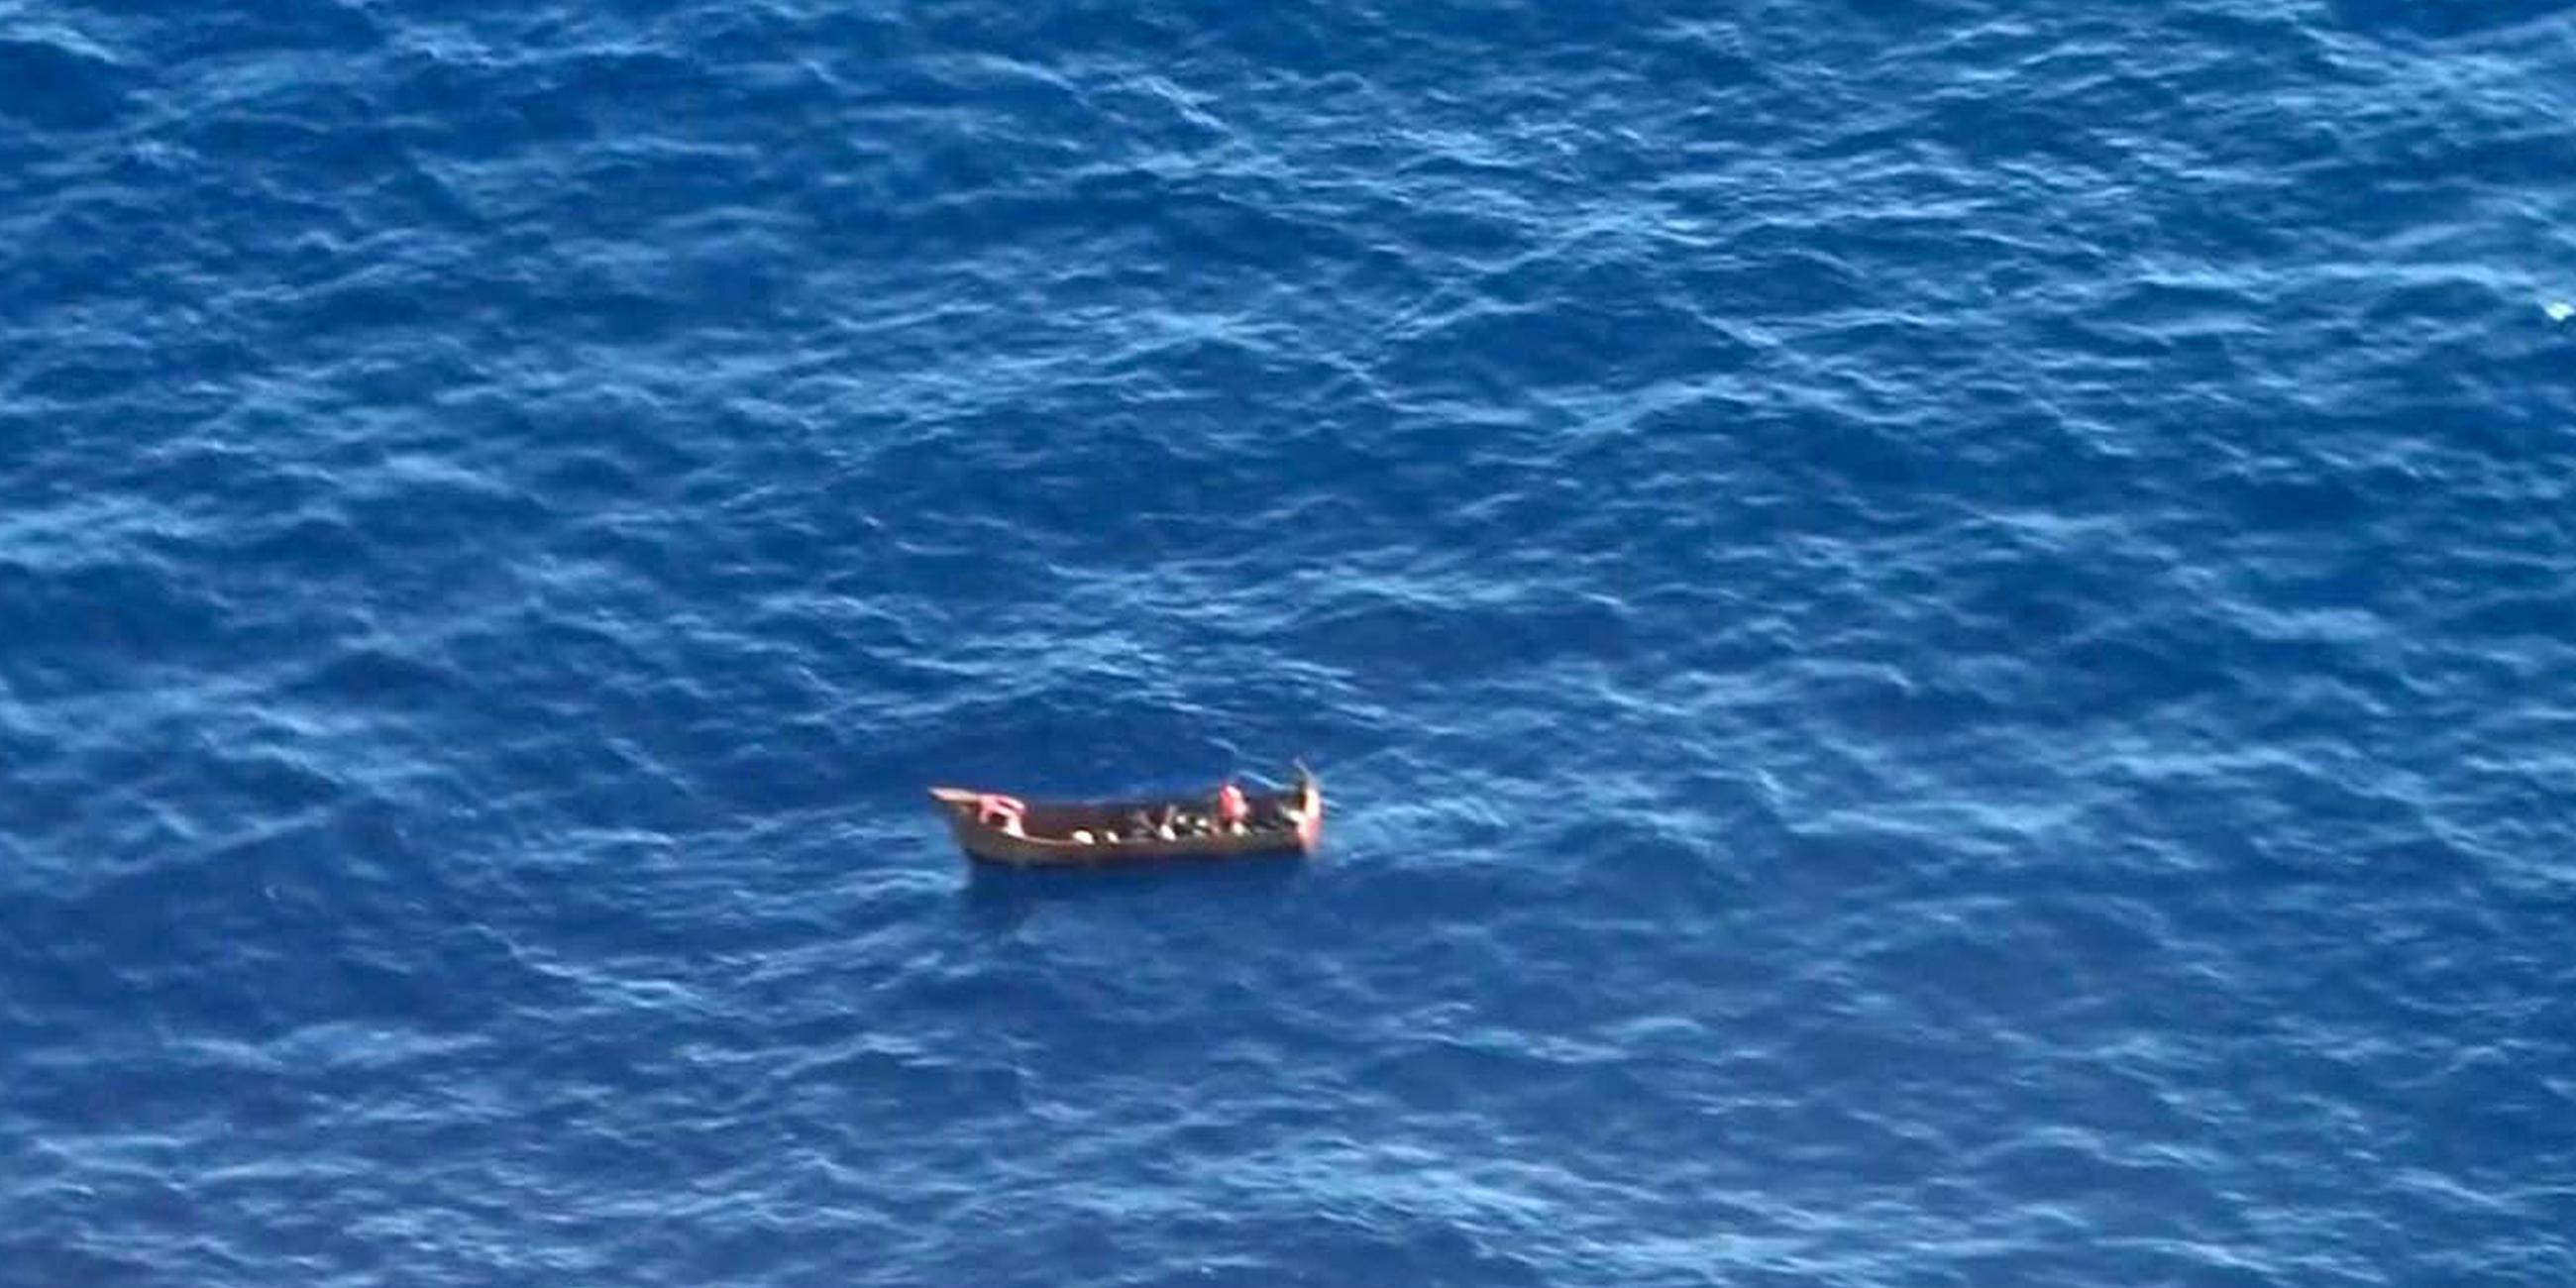 Ein treibendes kleines Boot mit nur vier Überlebenden an Bord